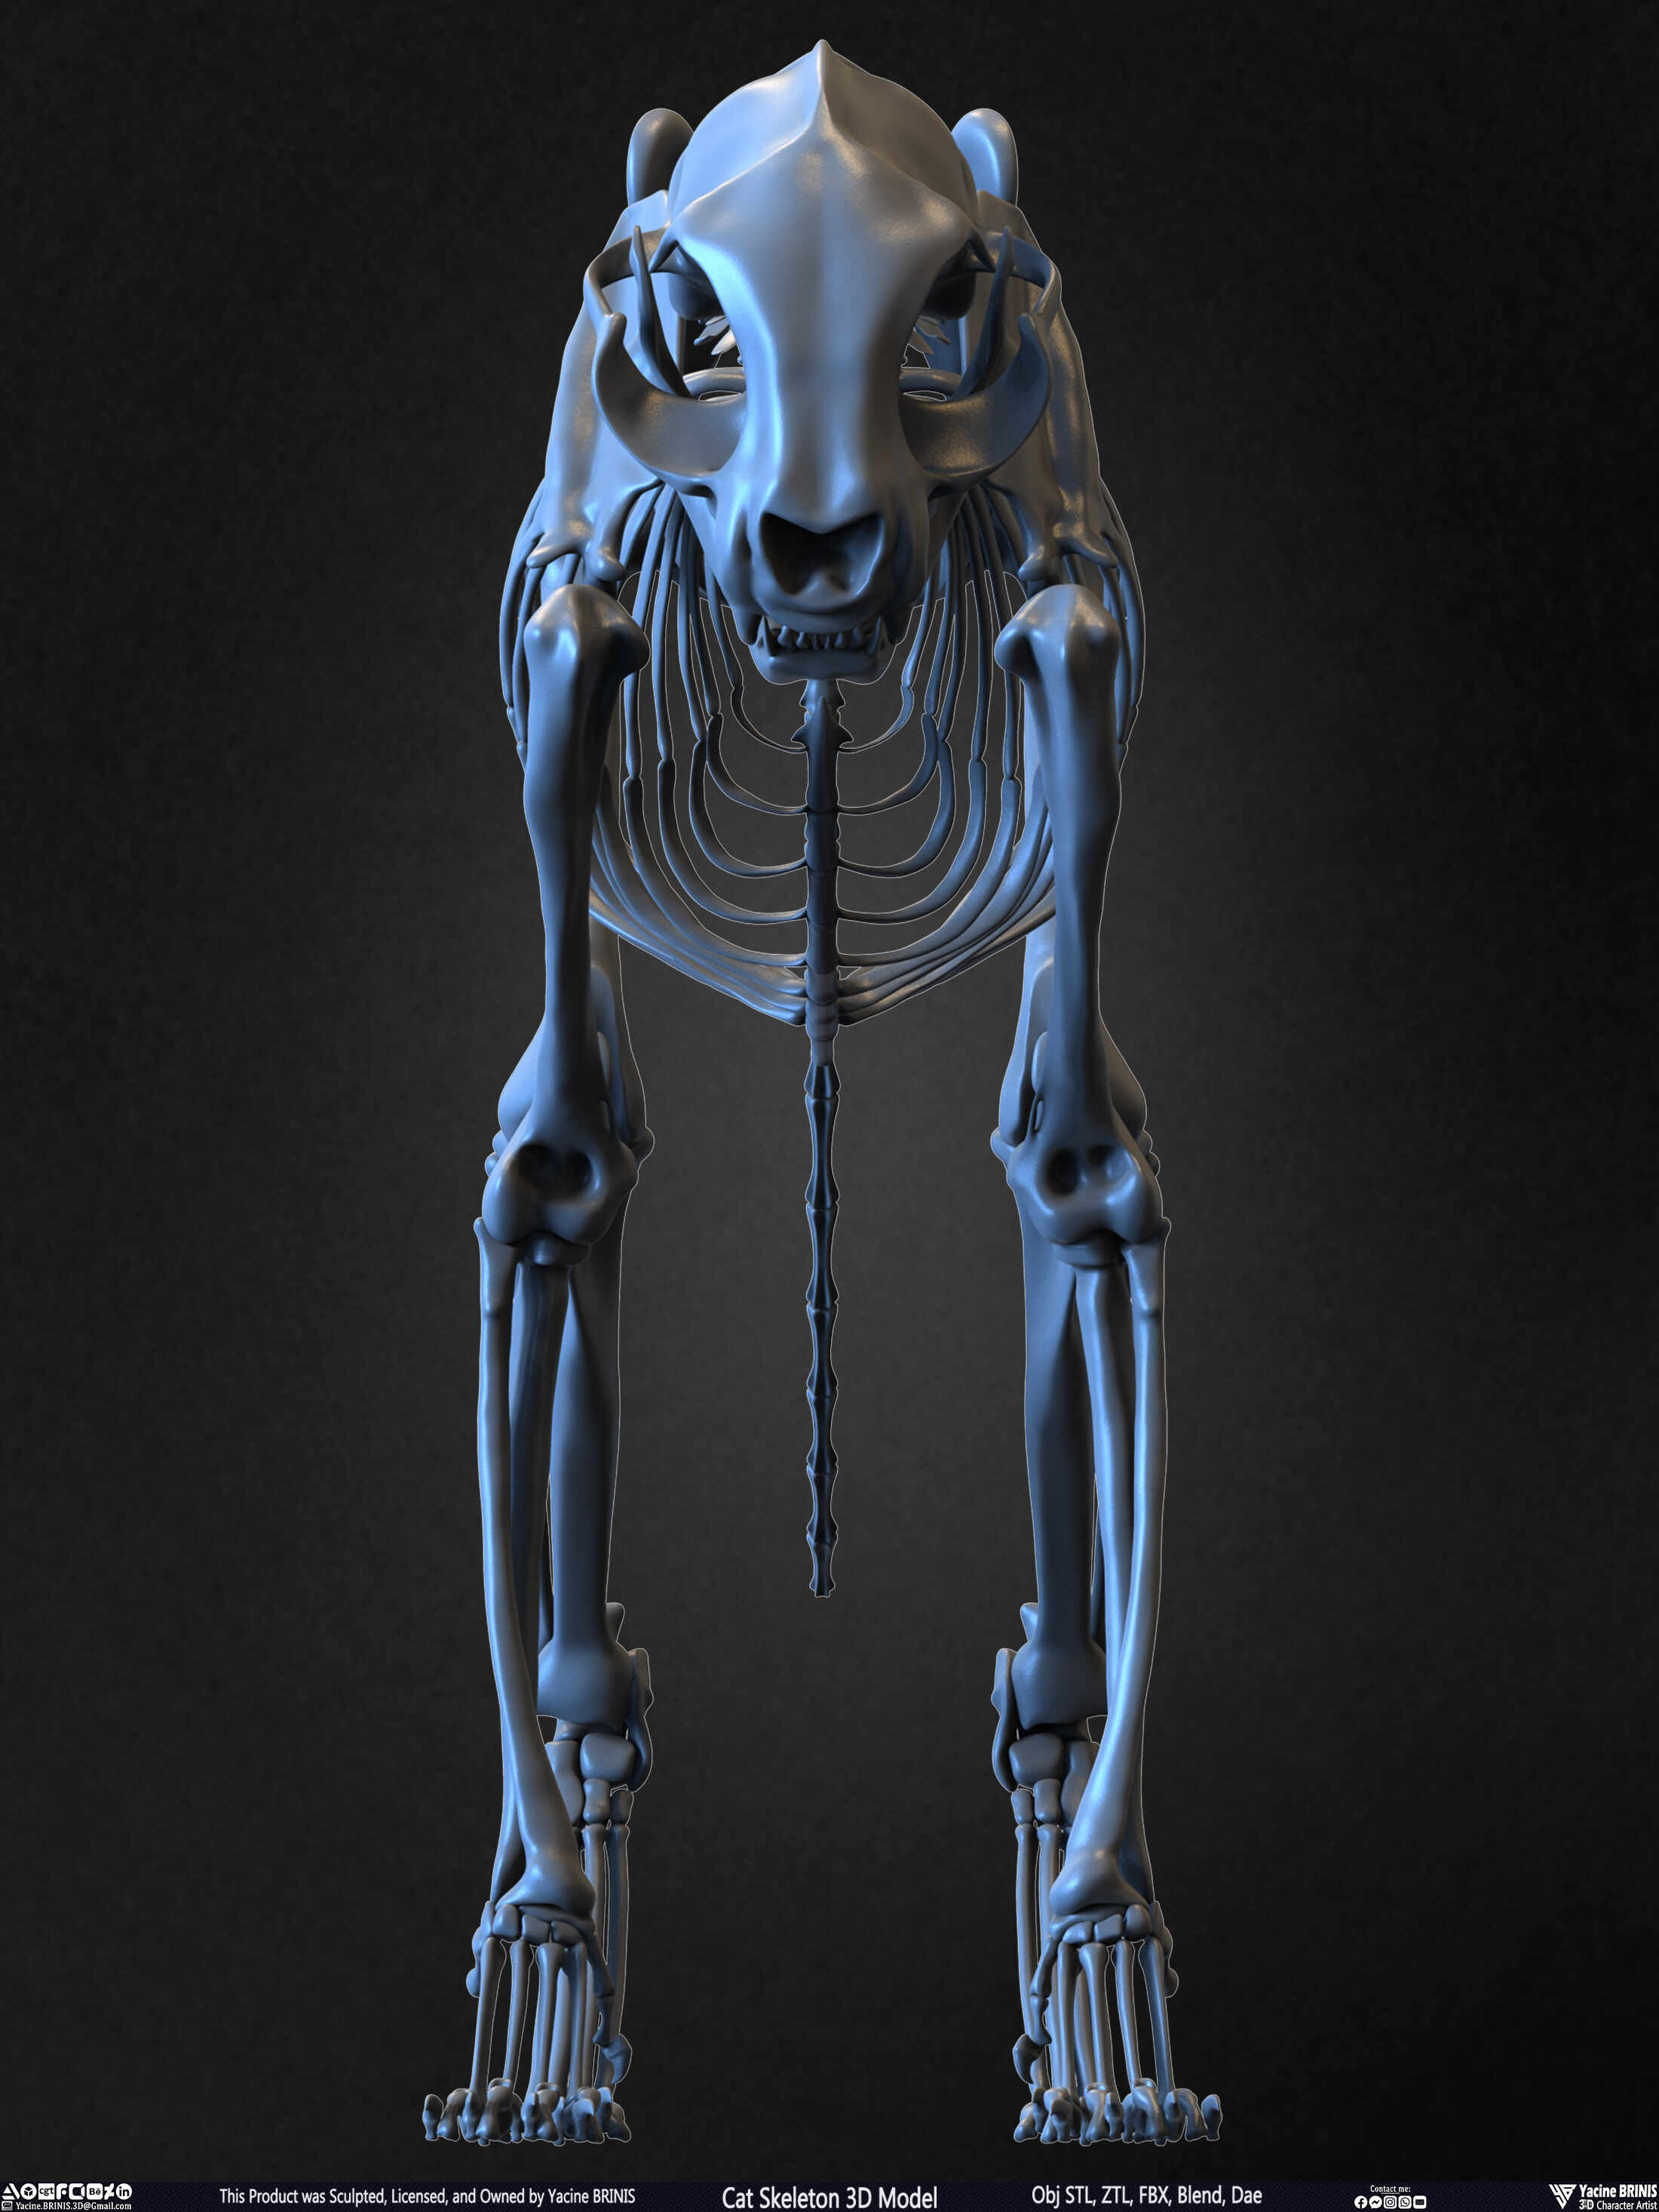 Dog Skeleton 3D model